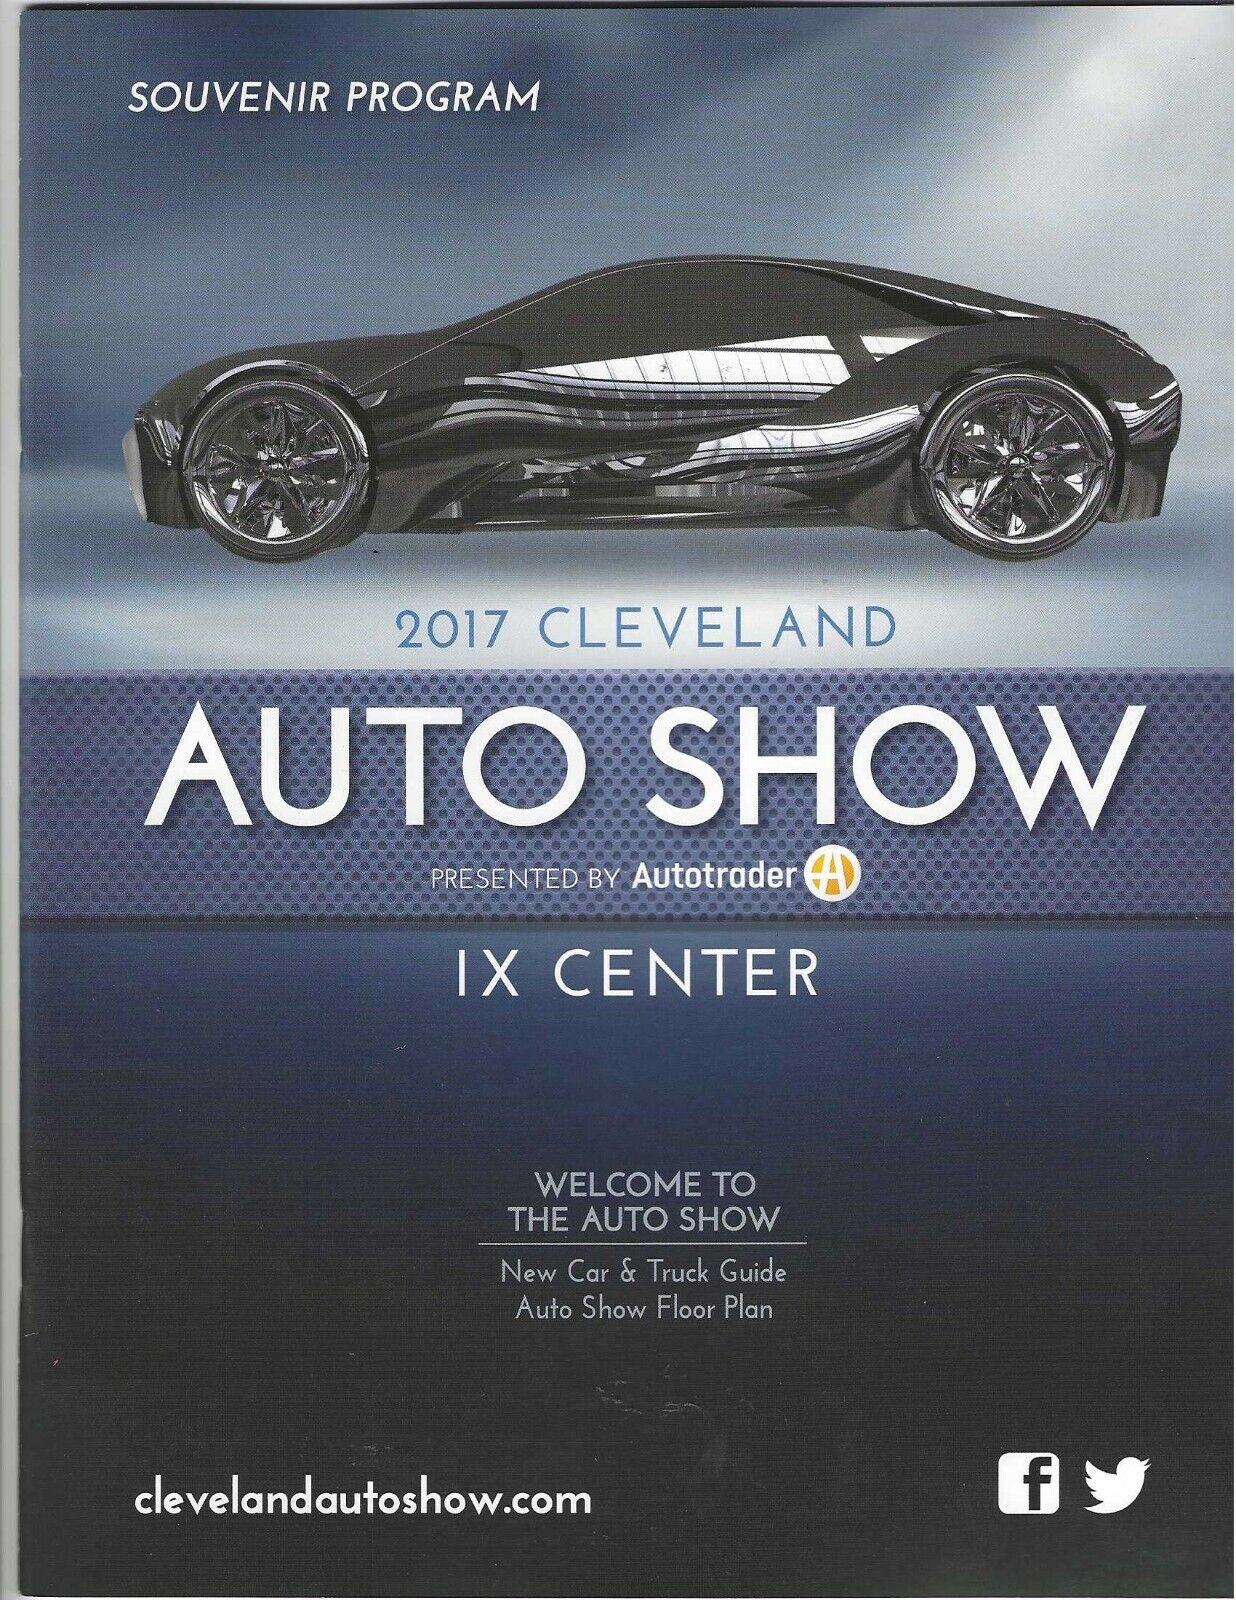 Cleveland Auto Show I-X Center 2017 Souvenir program